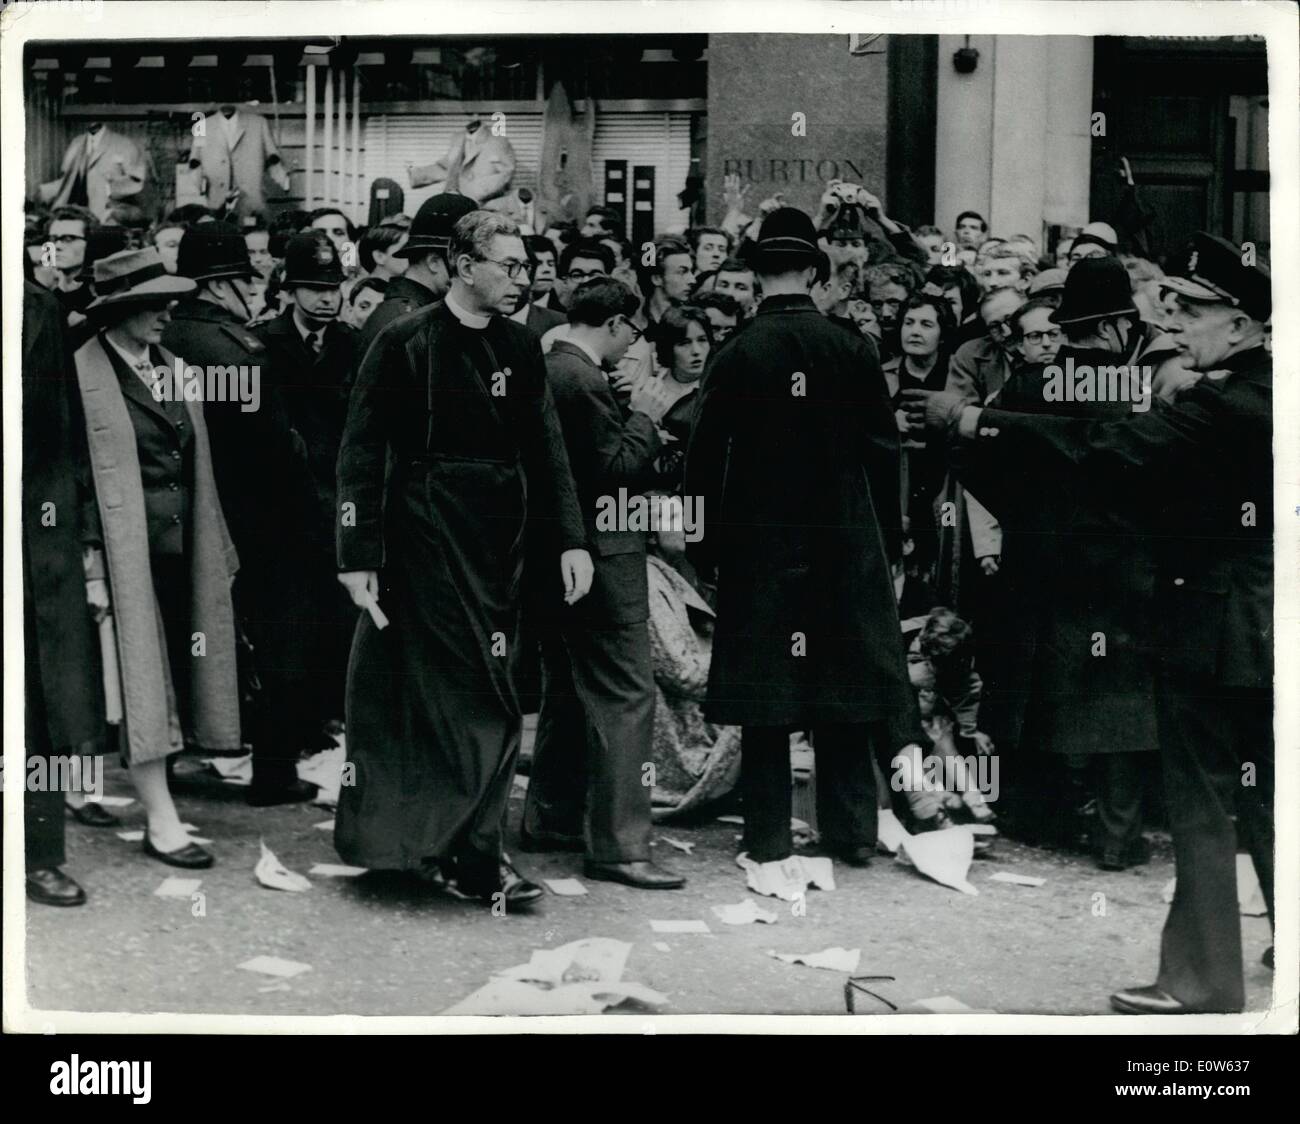 Septembre 09, 1961 - 1 000 arrêtés hier dans le ban-la-bombe s'asseoir vers le bas -manifestation à Trafalgar Square : ban-manifestants à la bombe de Londres les cellules coincé les postes de police la nuit dernière après le big sit-down à Trafalgar Square. Peu après minuit - 7 heures après la protestation a commencé - plus de 1 000 arrestations ont été faites. La prévue mars à une masse d'occupation, à la place du Parlement n'a jamais été arrêté à cause d'une solide ligne bleue de la police les manifestants pris au piège à Trafalgar Square. photo Canon montre John Collins, Chœur de St Banque D'Images